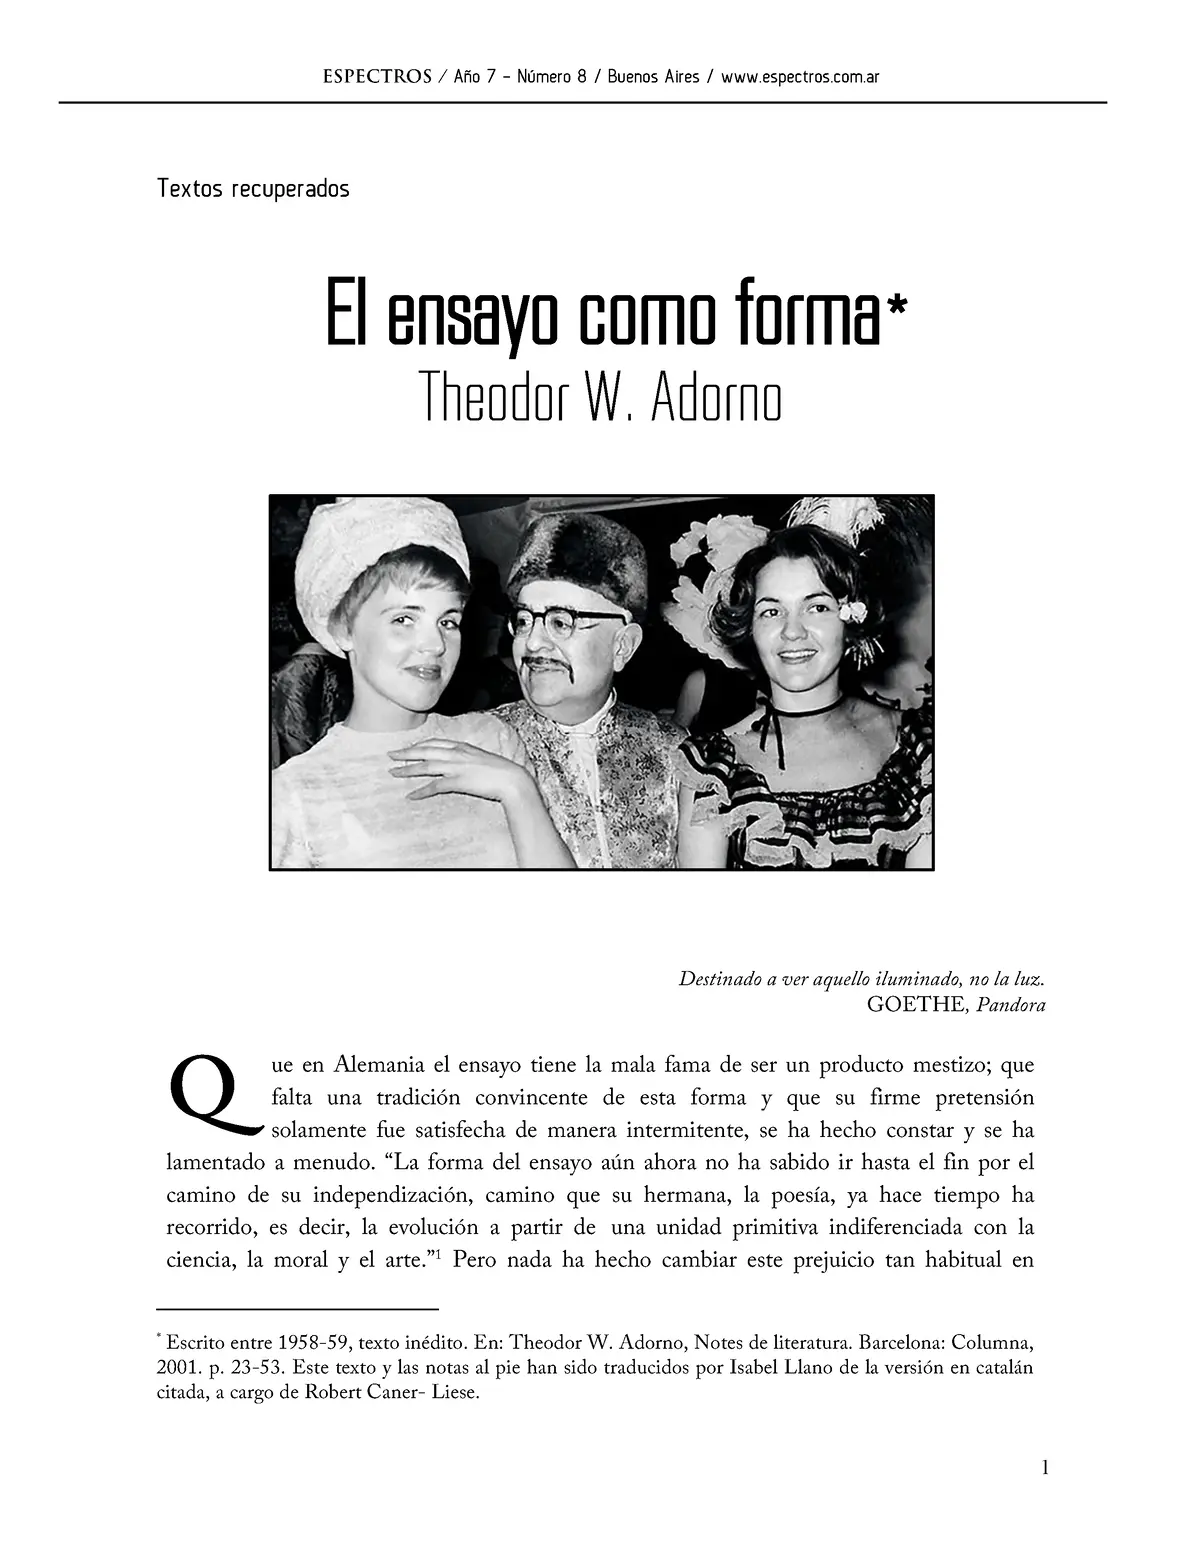 el ensayo como forma adorno resumen - Cuál es el pensamiento filosófico de Theodor Adorno